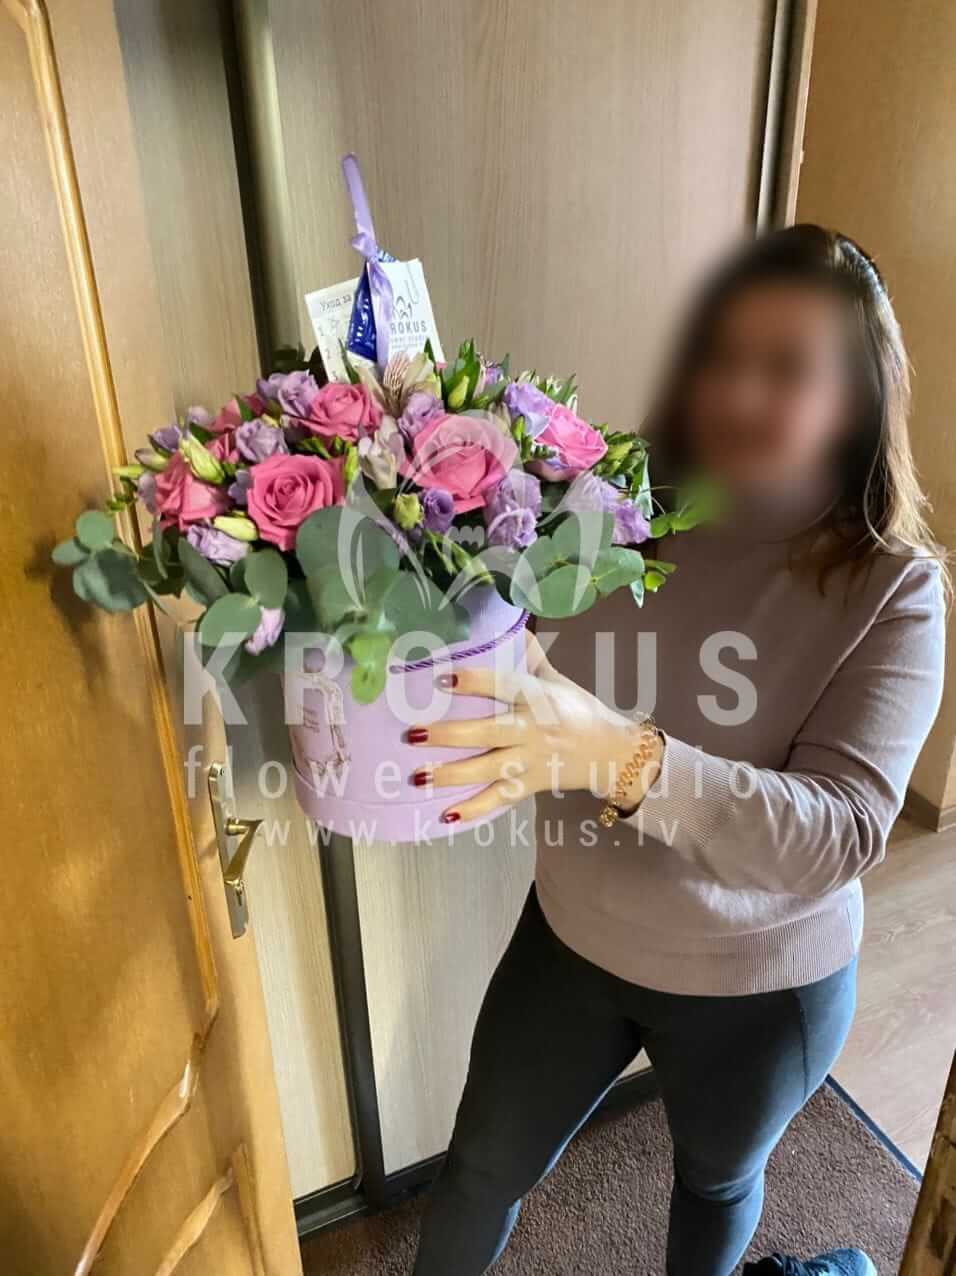 Доставка цветов в город Рига (коробкарозовые розыфрезиидельфиниумэвкалиптлизиантусы (эустома))